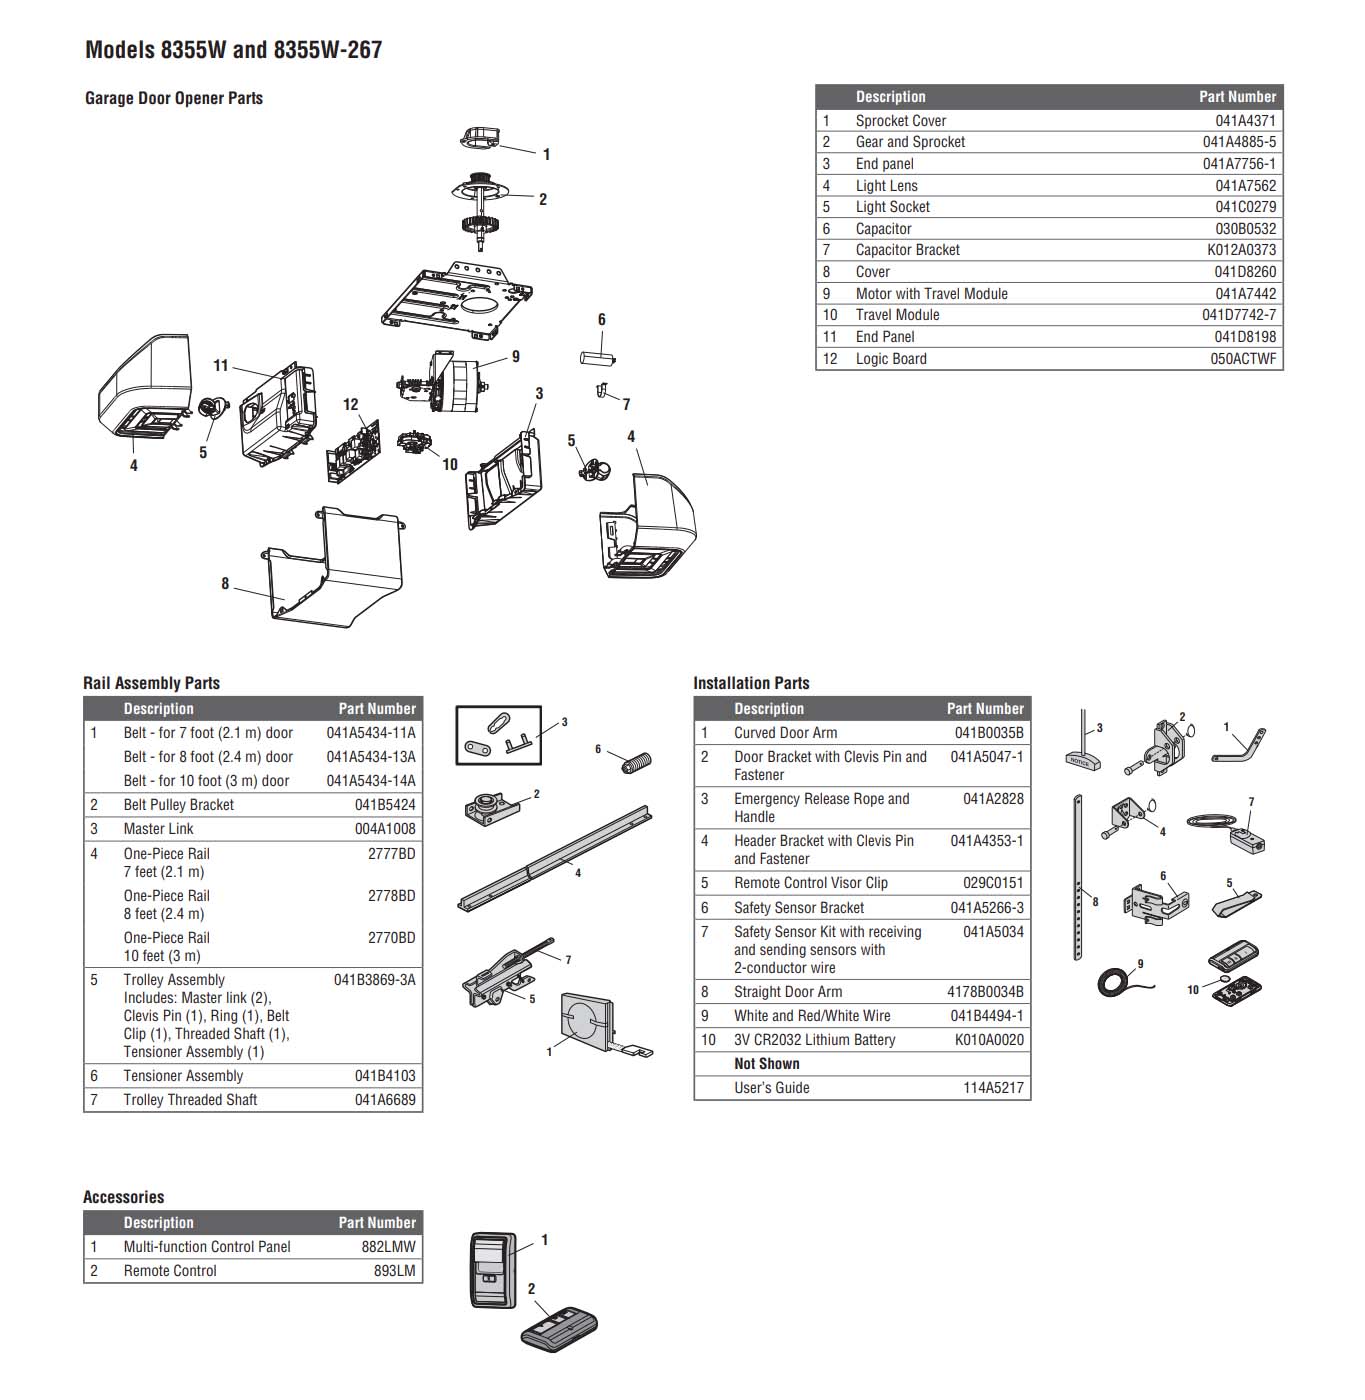 LiftMaster 8355W and 8355W-267 Garage Door Opener Parts Diagram and List